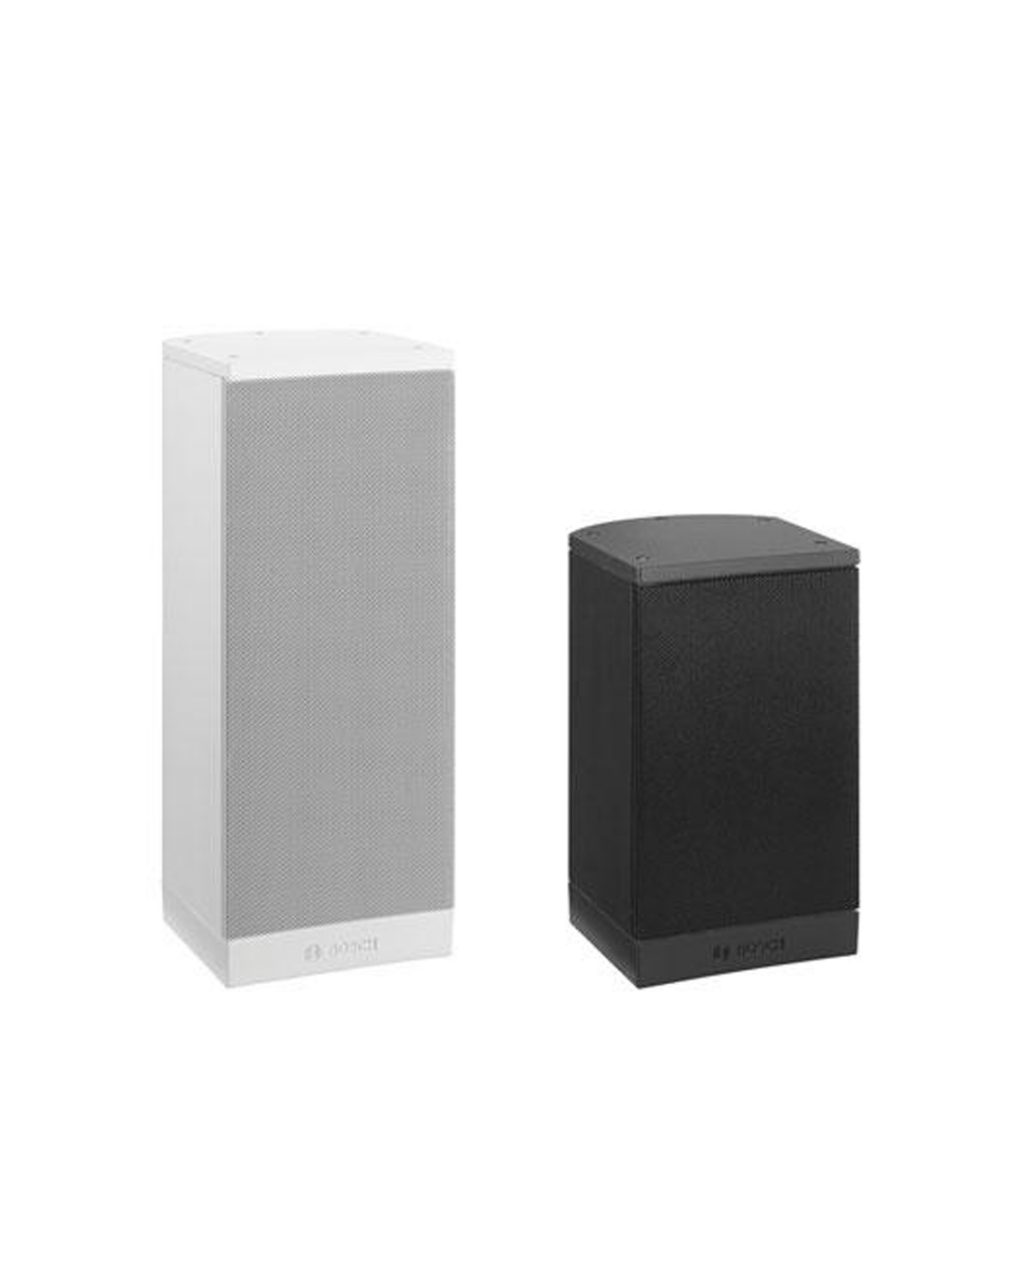 LB1‑UMx0E Premium‑sound Cabinet Loudspeaker Range